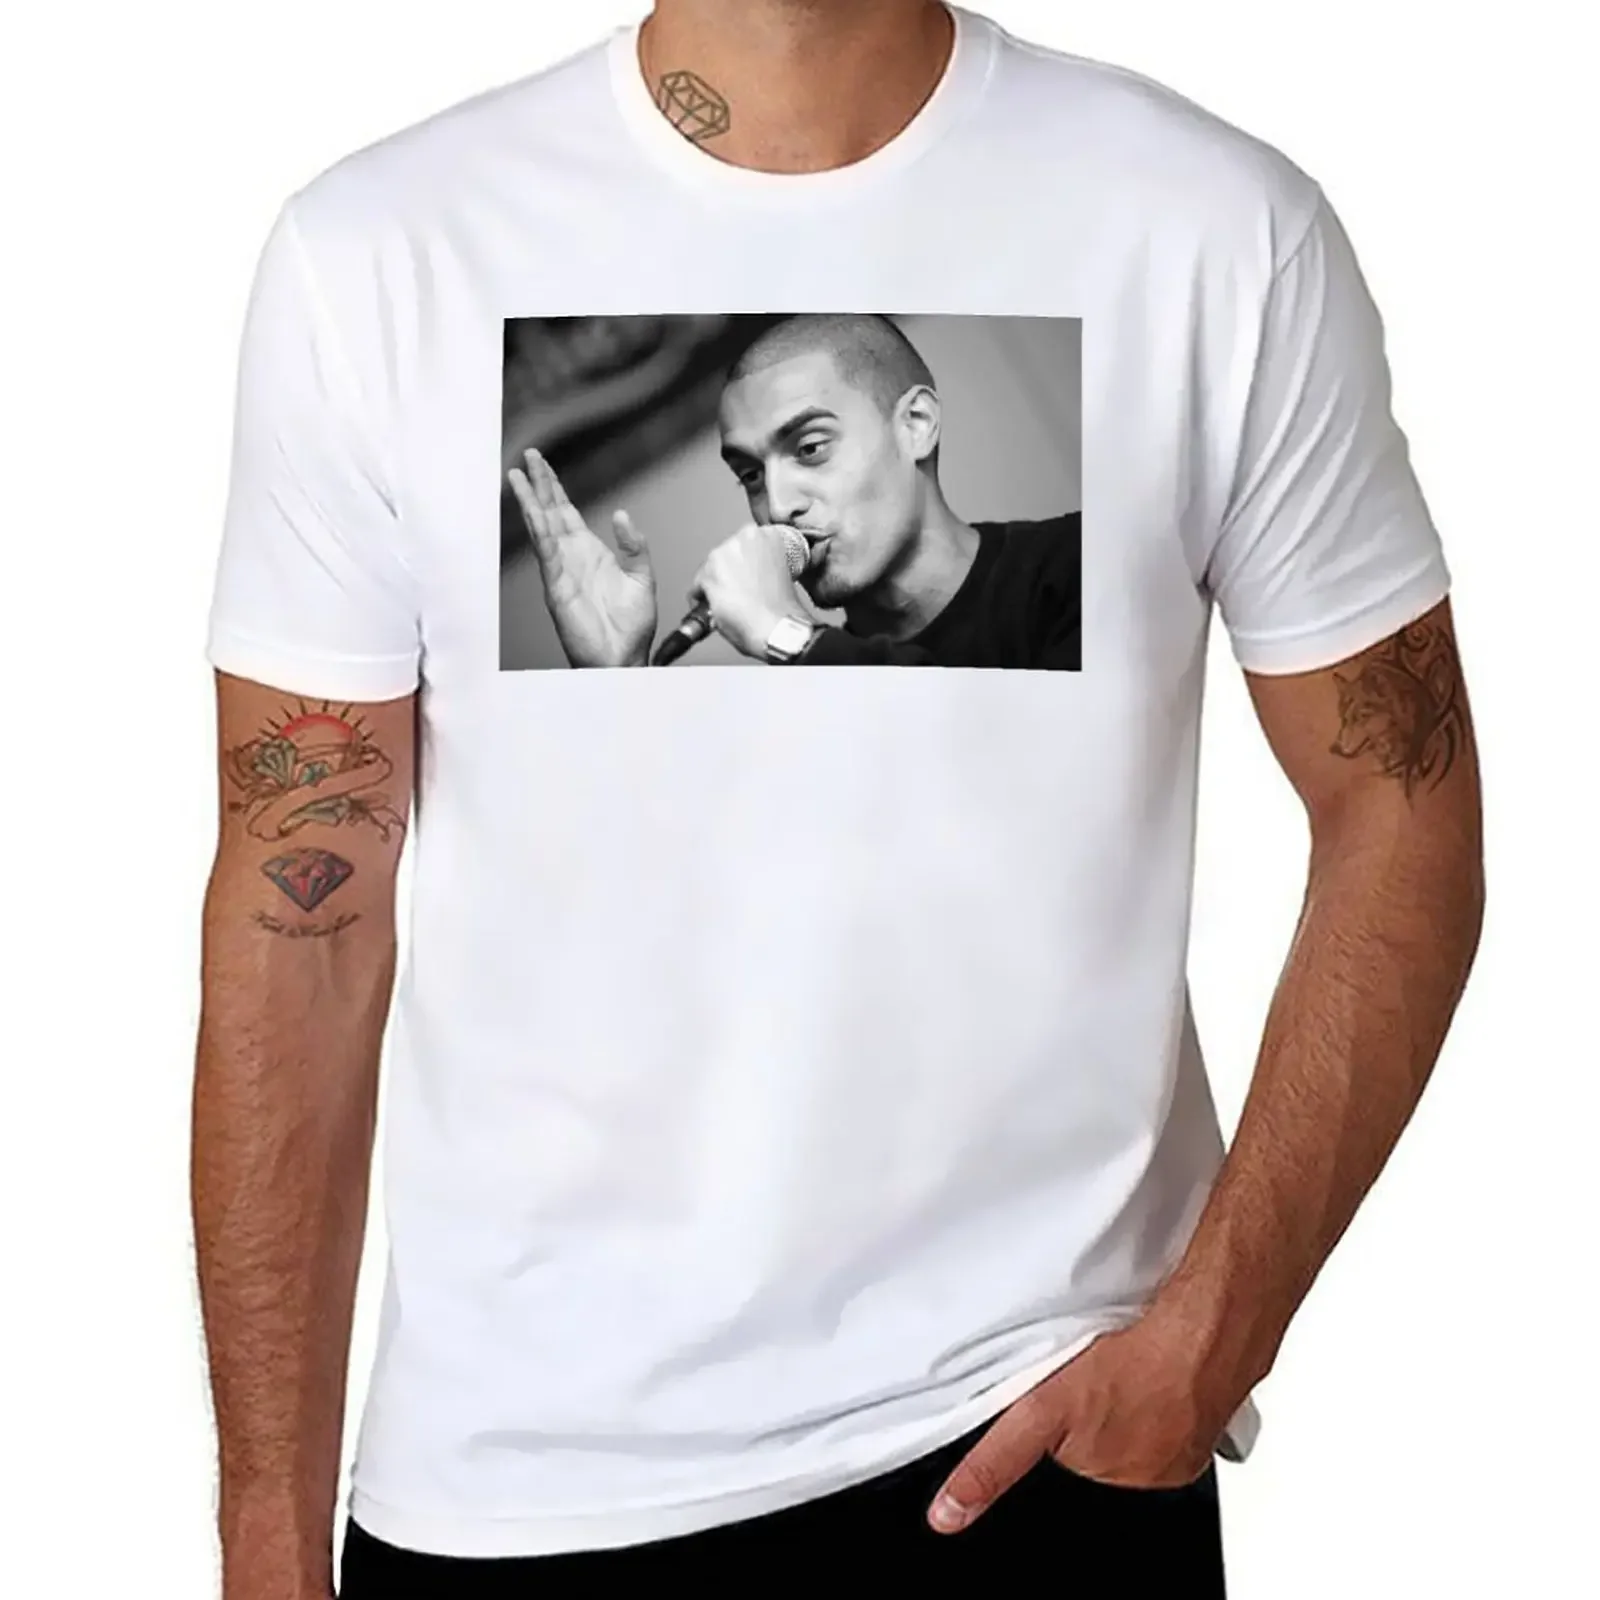 

Футболка Lowkey (футболка, телефон реальное и многое другое) футболка дизайн таможни ваша собственная Милая одежда футболки для мужчин